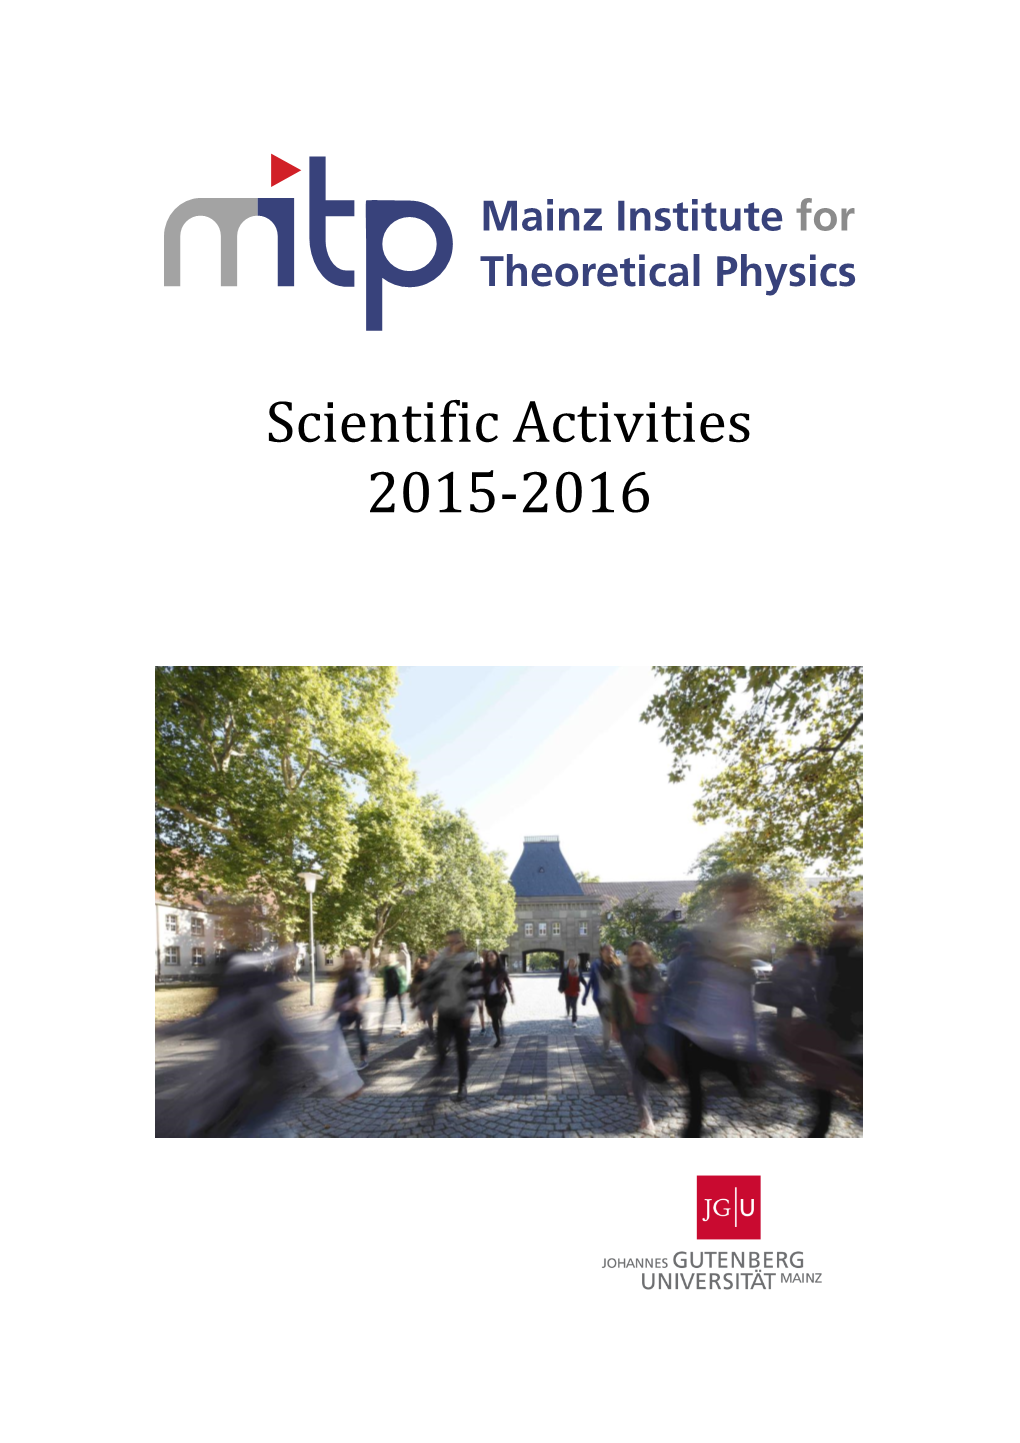 MITP Scientific Report 2015/2016